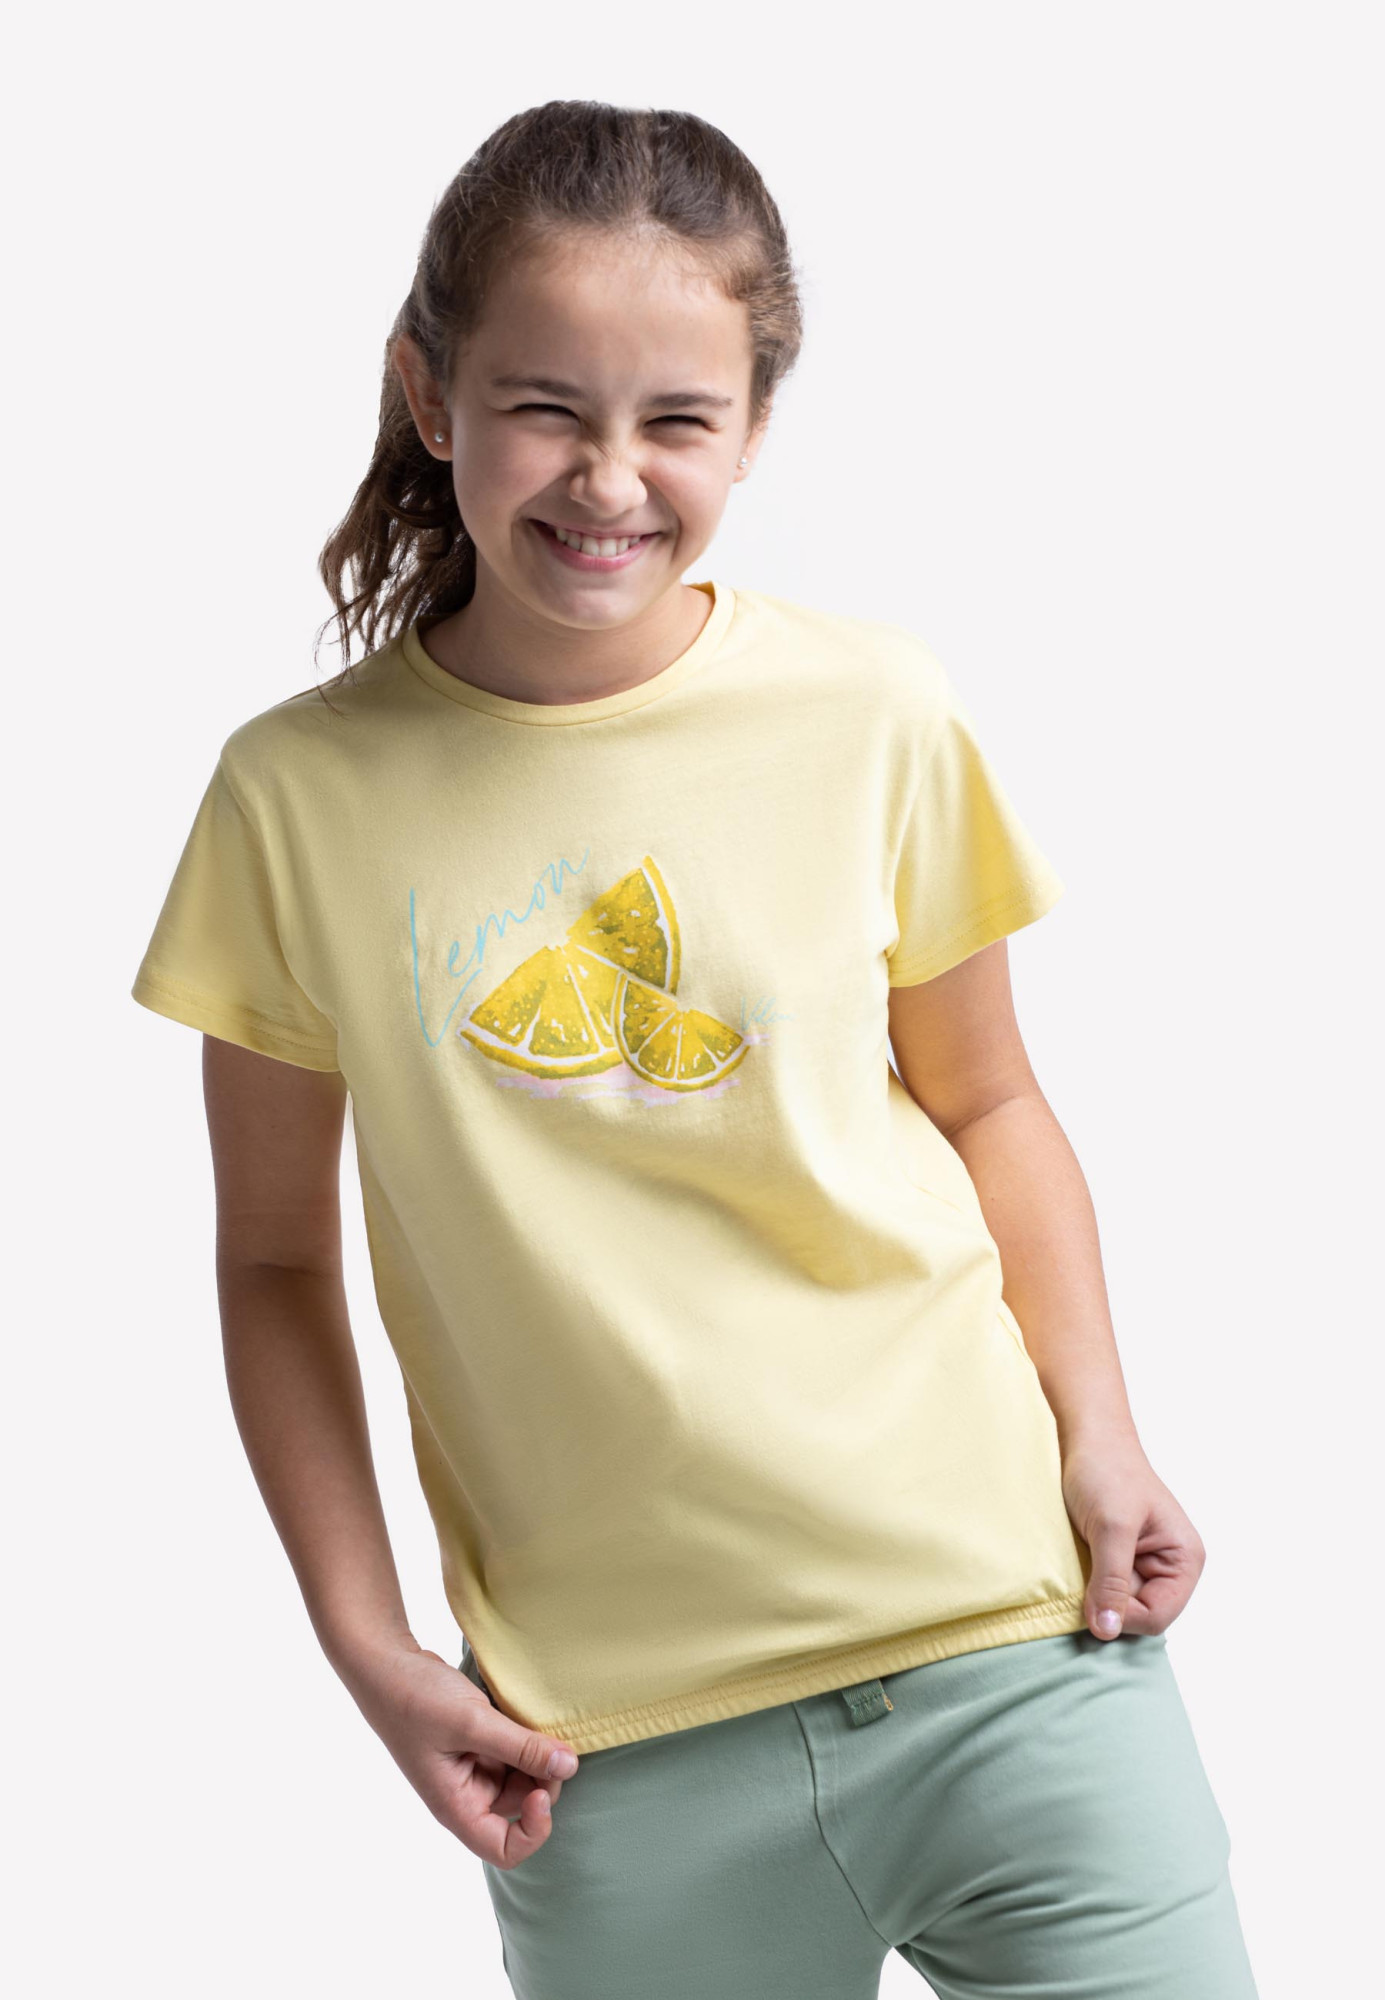 Volcano Regular T-Shirt T-Lemon Junior G02473-S22 Yellow Light 134/140